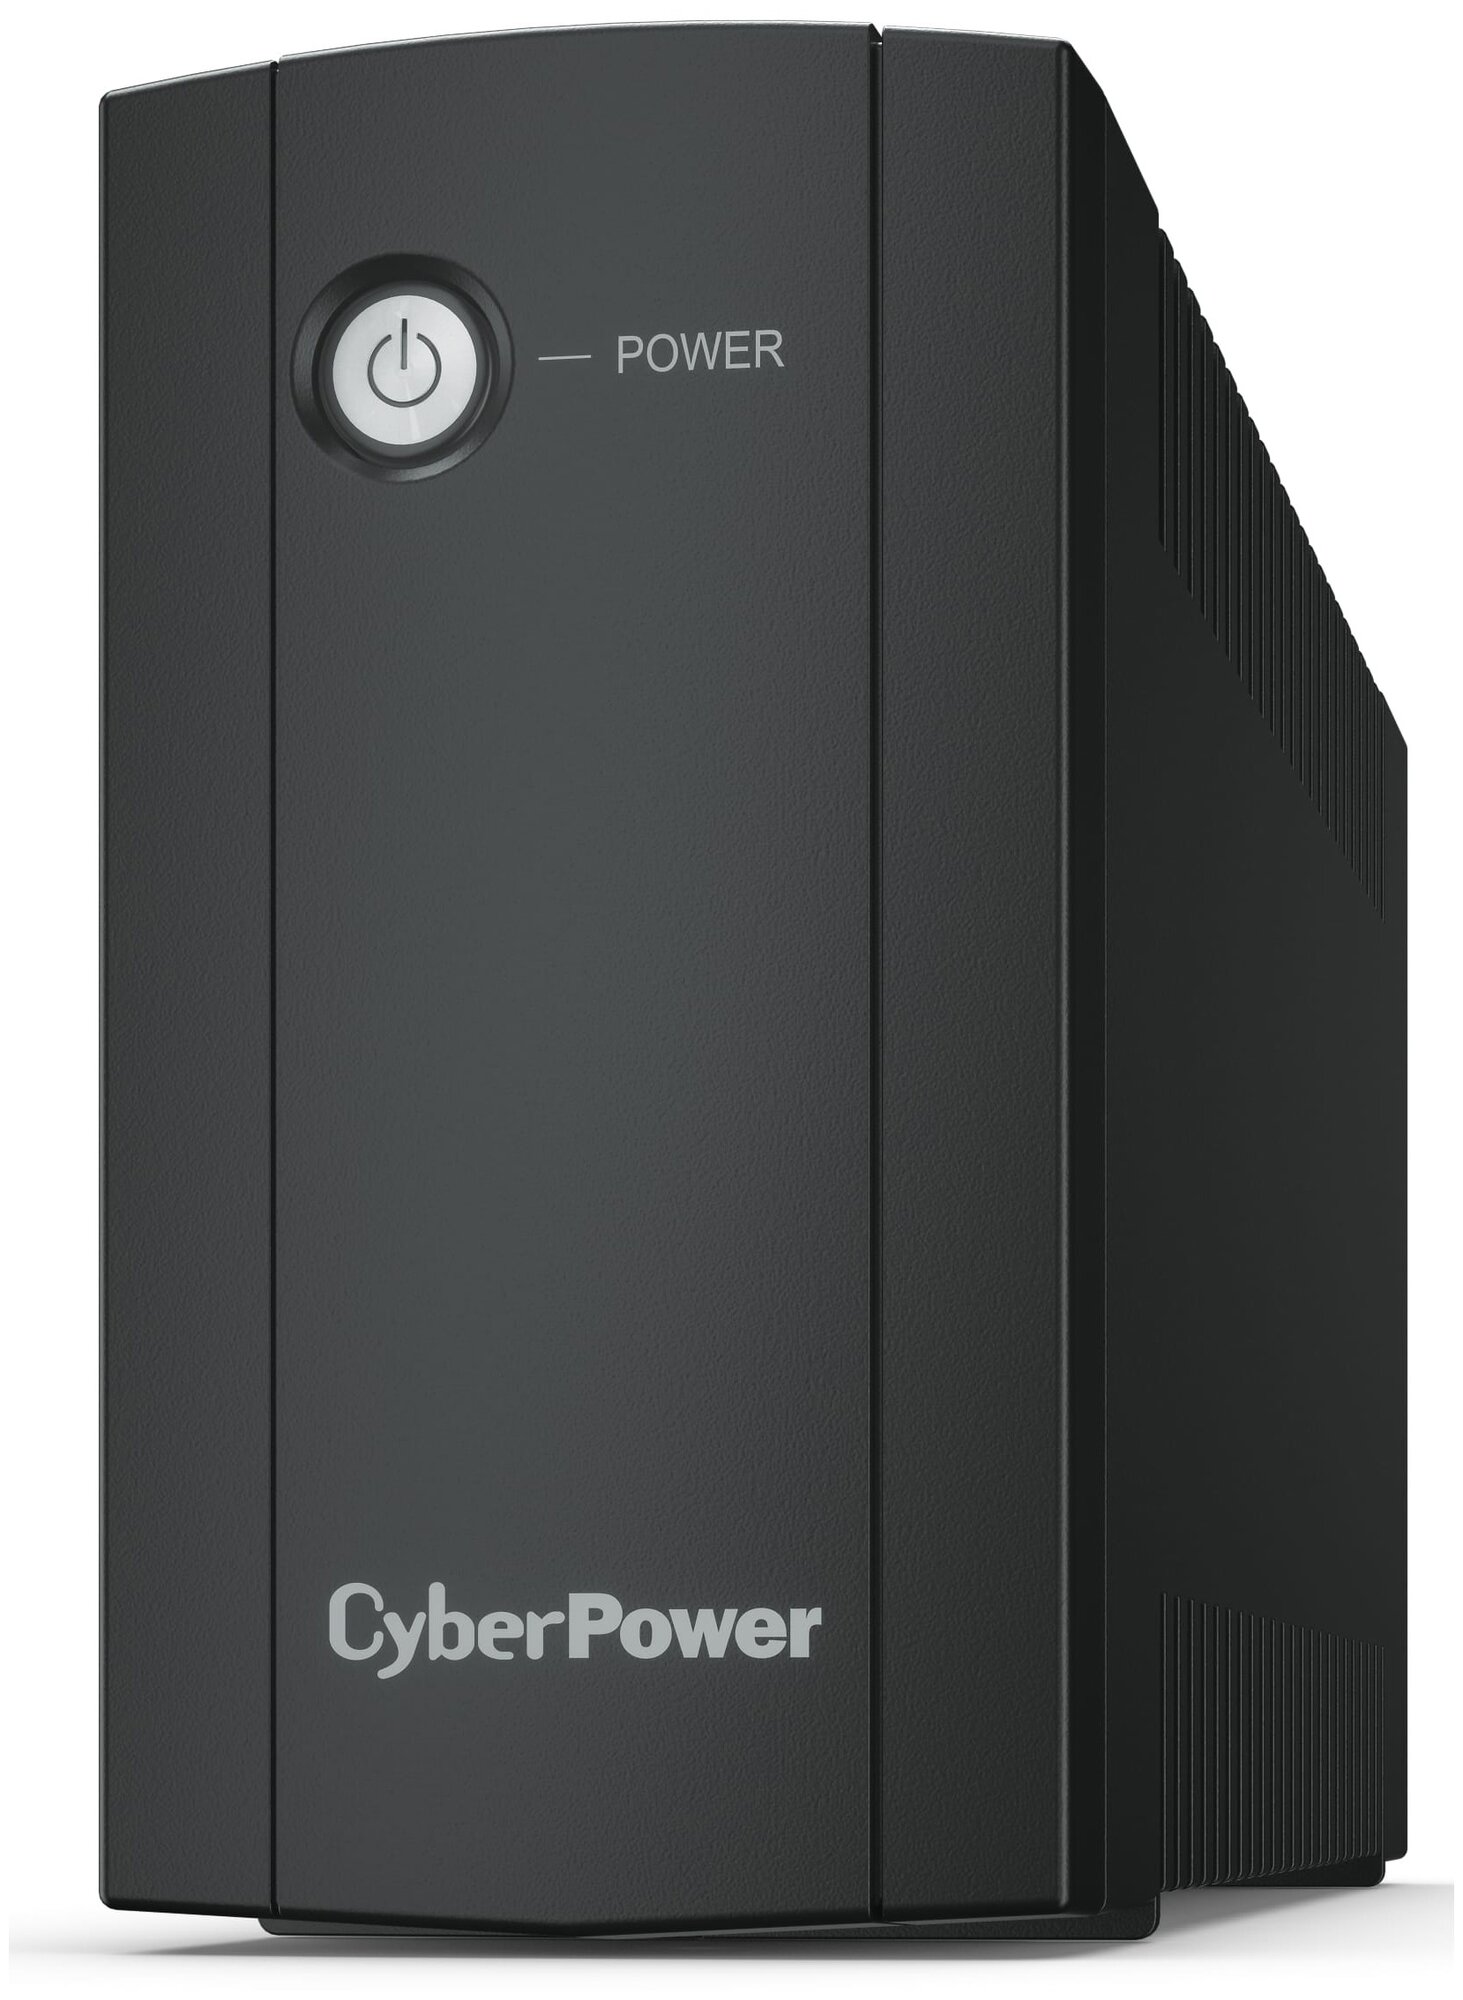 CyberPower - фото №1